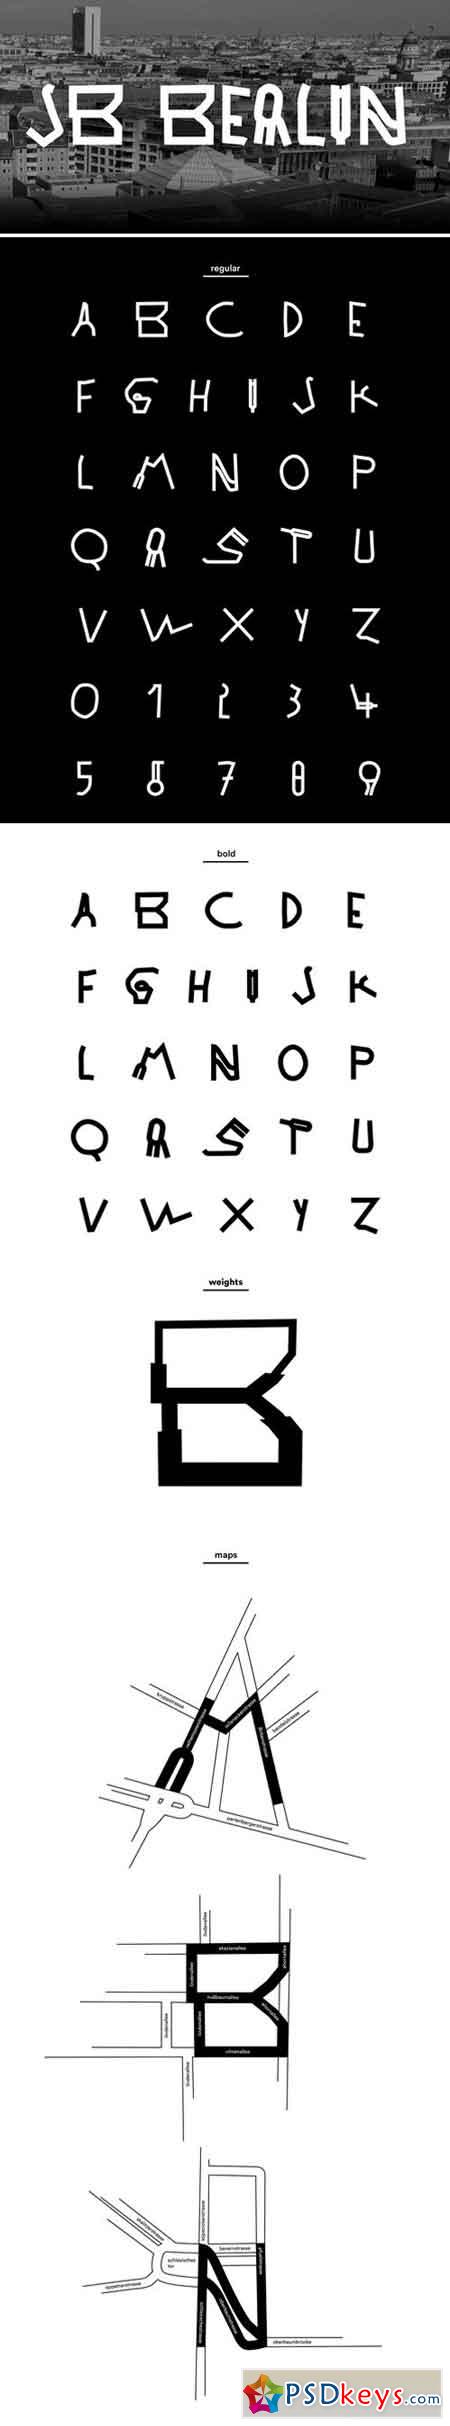 JB Berlin typeface